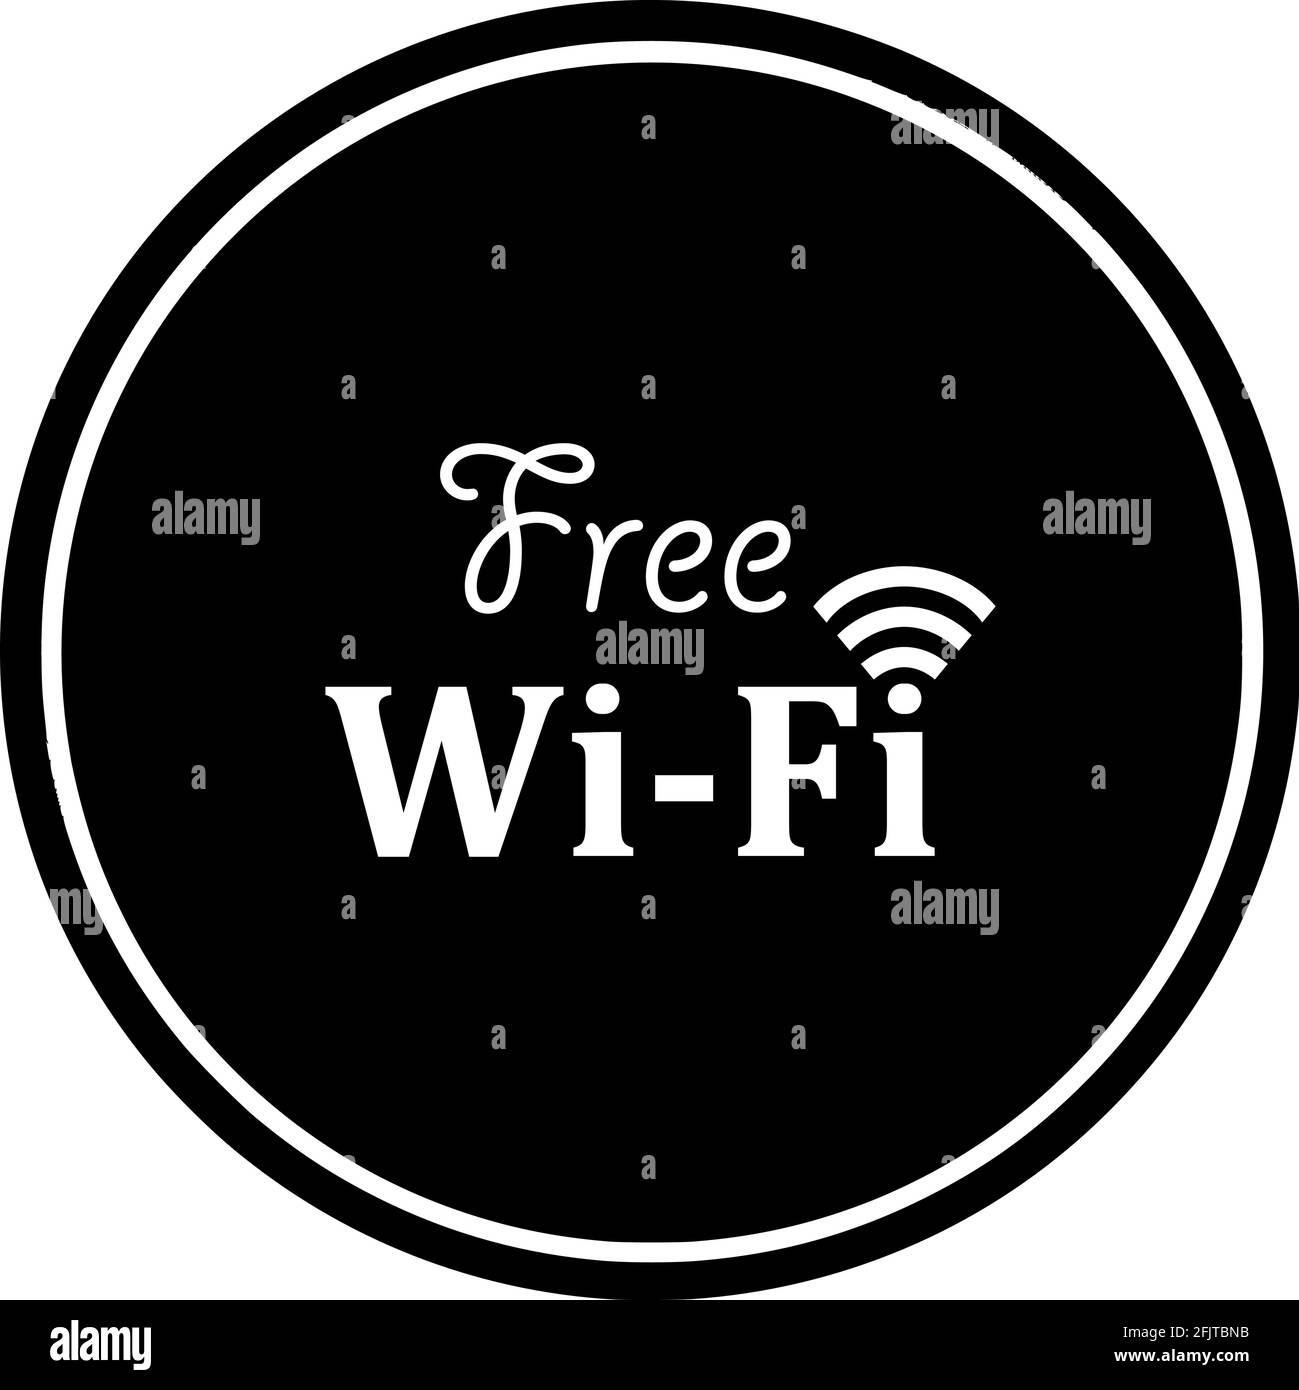 Segnale di accesso Wi-Fi a Internet gratuito. Sfondo cerchiato nero. Perfetto per gli ambienti d'affari, caffetteria, ristorante, centro commerciale, aeroporto, metro, resort, edifici, ecc. Illustrazione Vettoriale